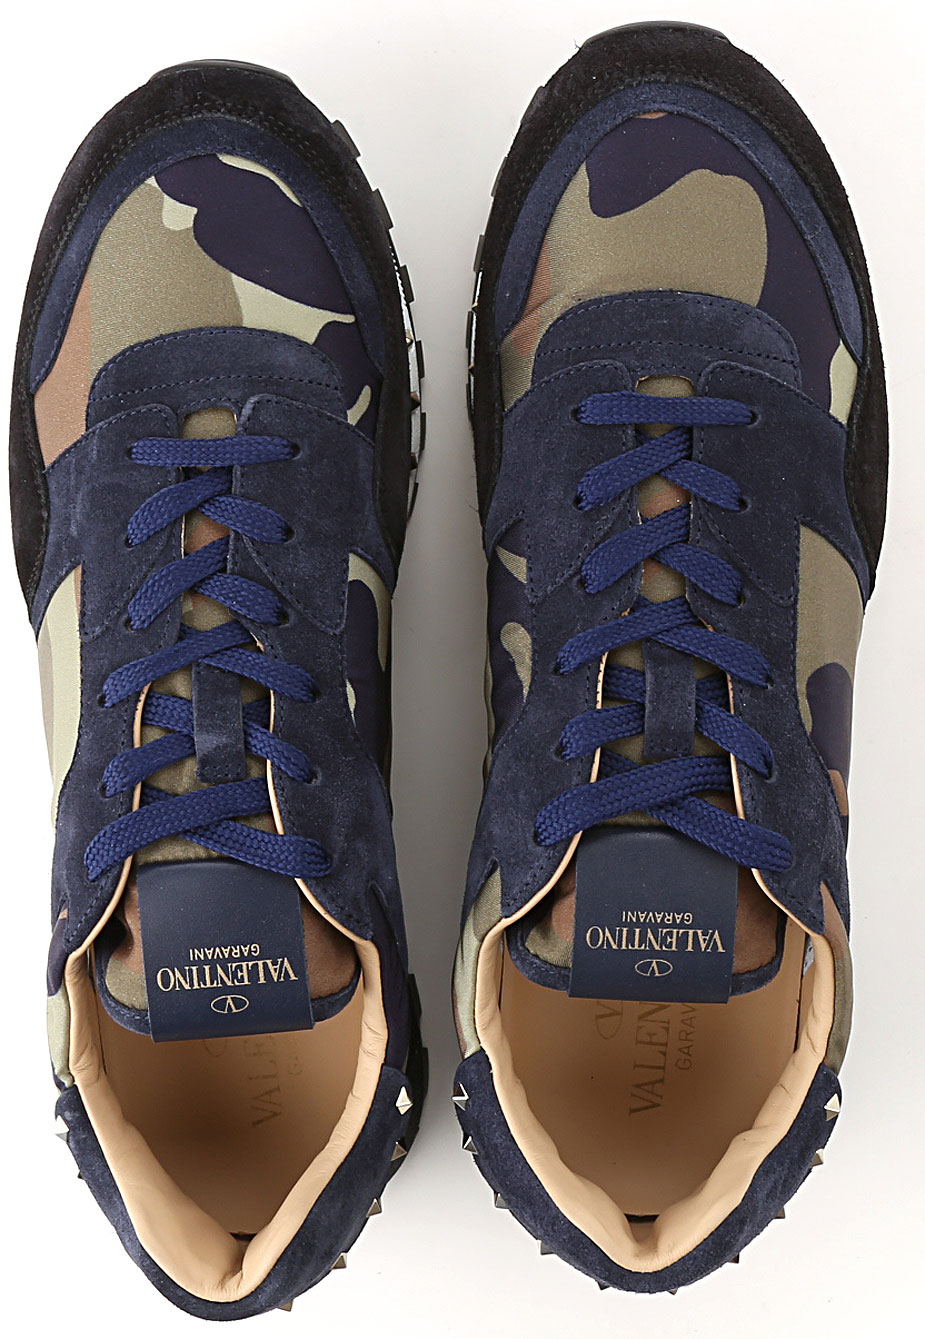 Mens Shoes Valentino Garavani, Style code: ry2s0952-nym-hf8